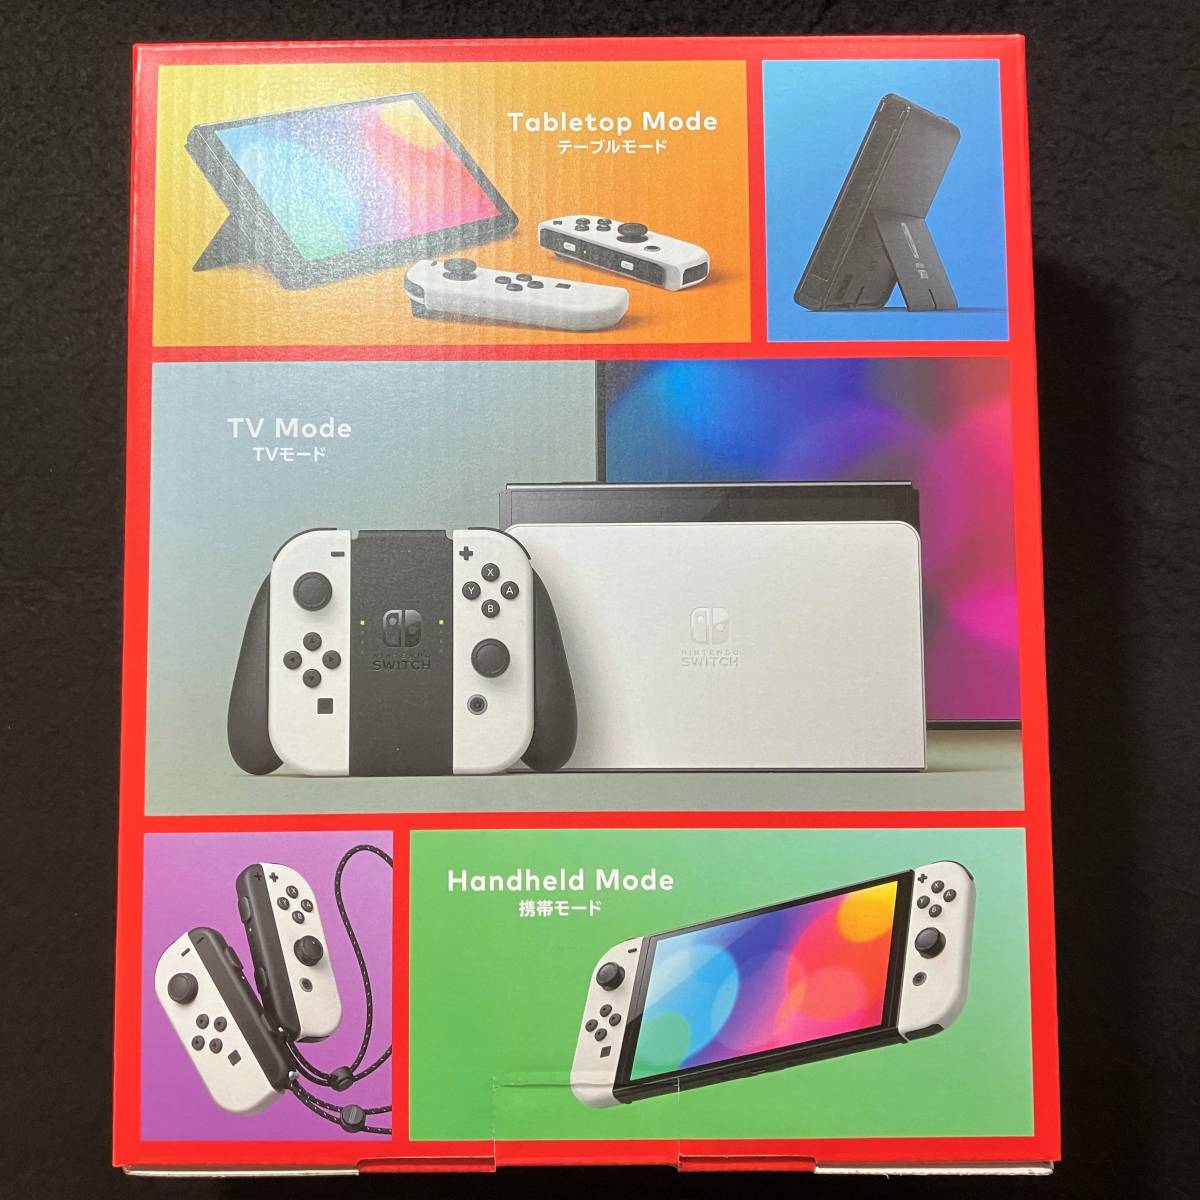 新品未開封品//有機ELモデル ホワイト Nintendo Switch ニンテンドー 